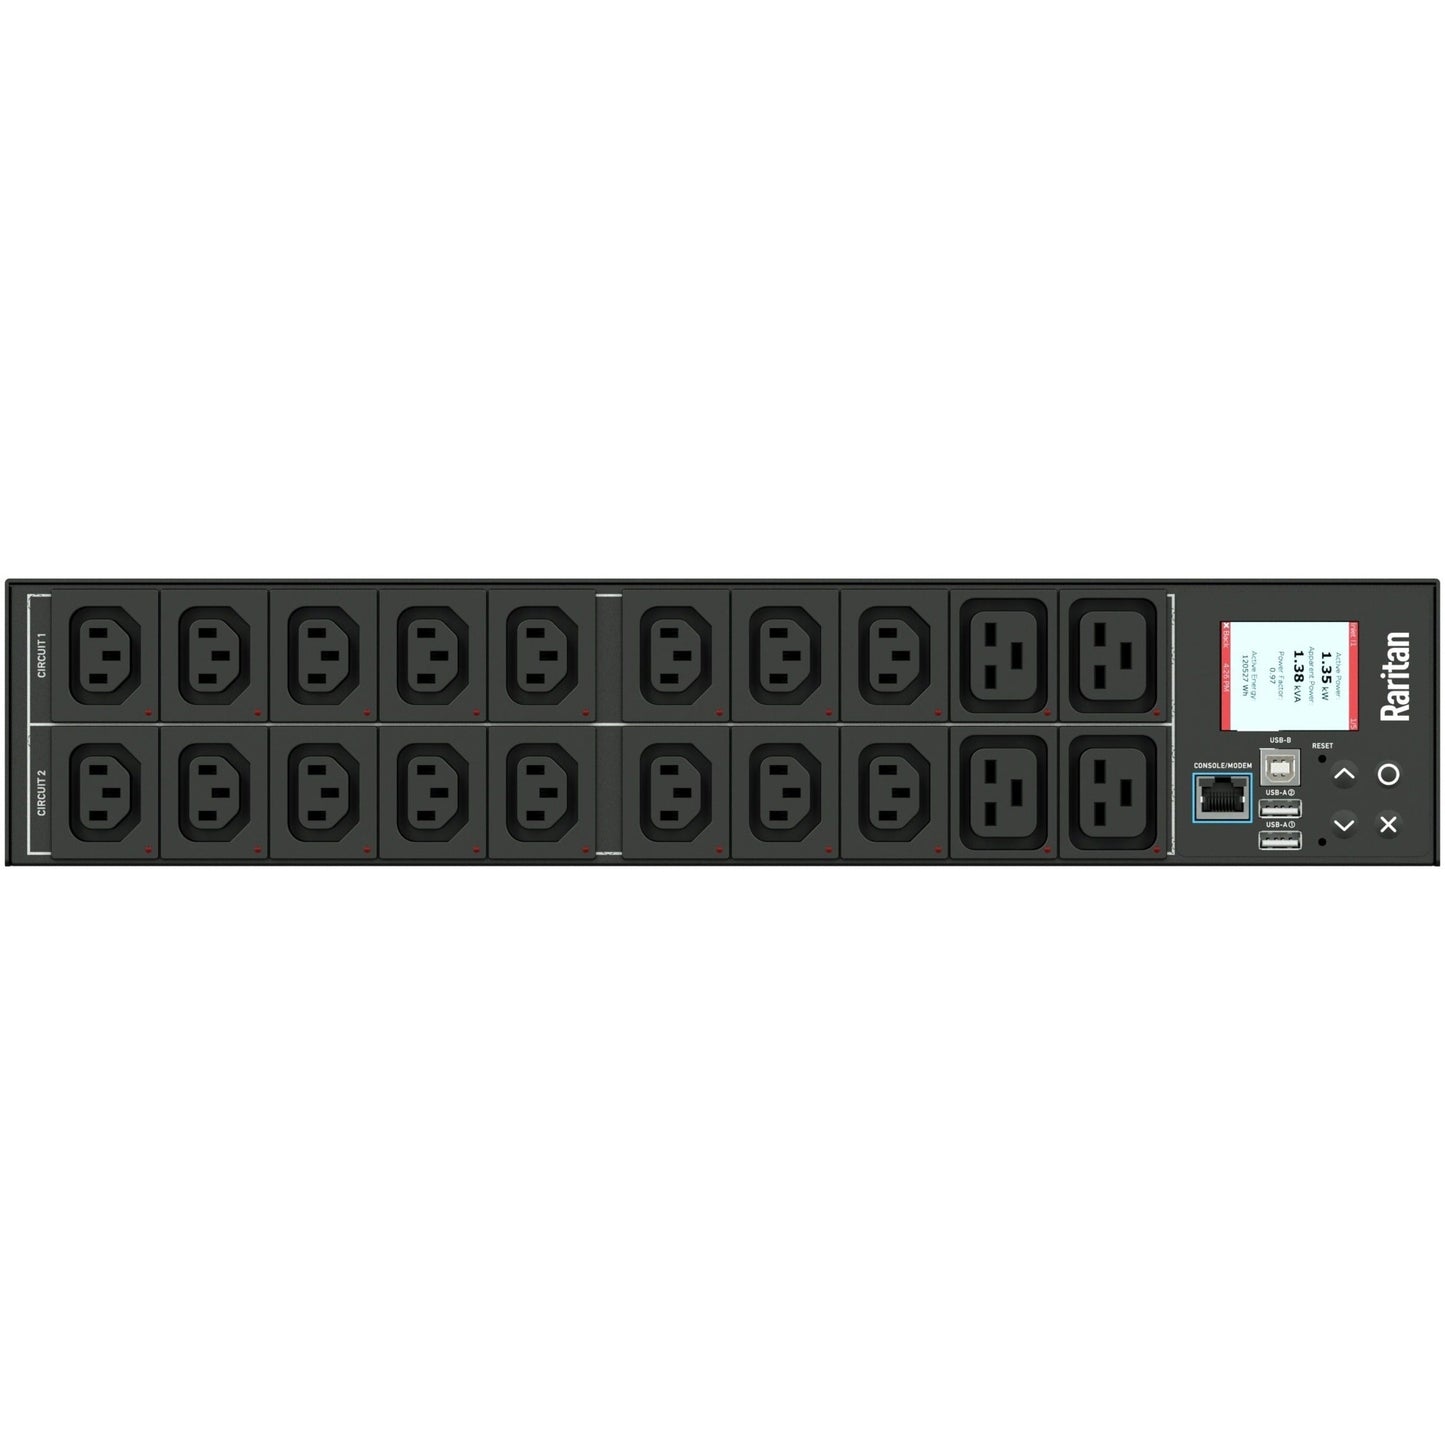 Raritan PX3-4464R 20-Outlet PDU